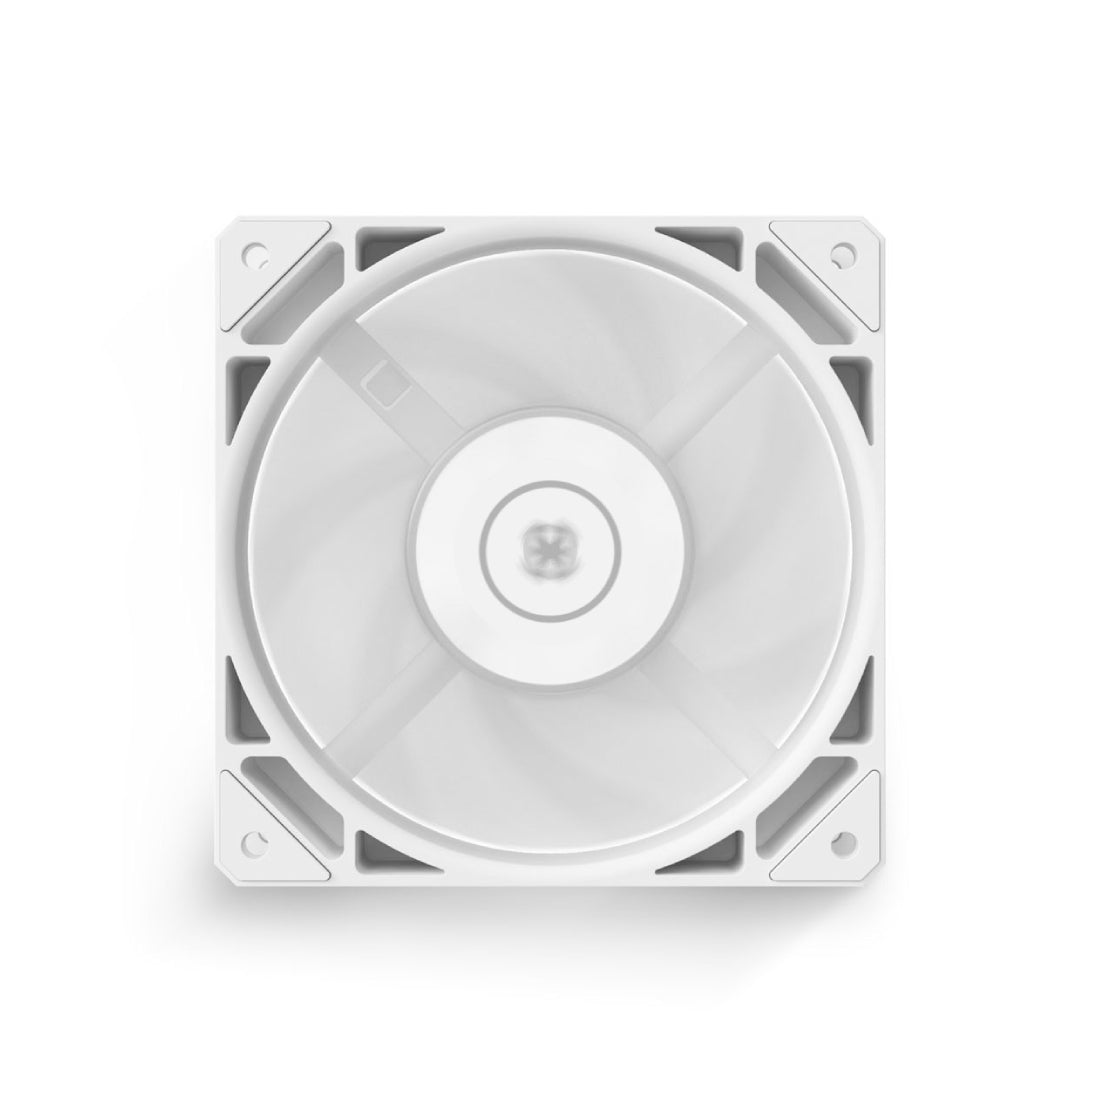 EKWB EK-Loop Fan FPT 10 D-RGB Single Fan - White - مروحة تبريد - Store 974 | ستور ٩٧٤